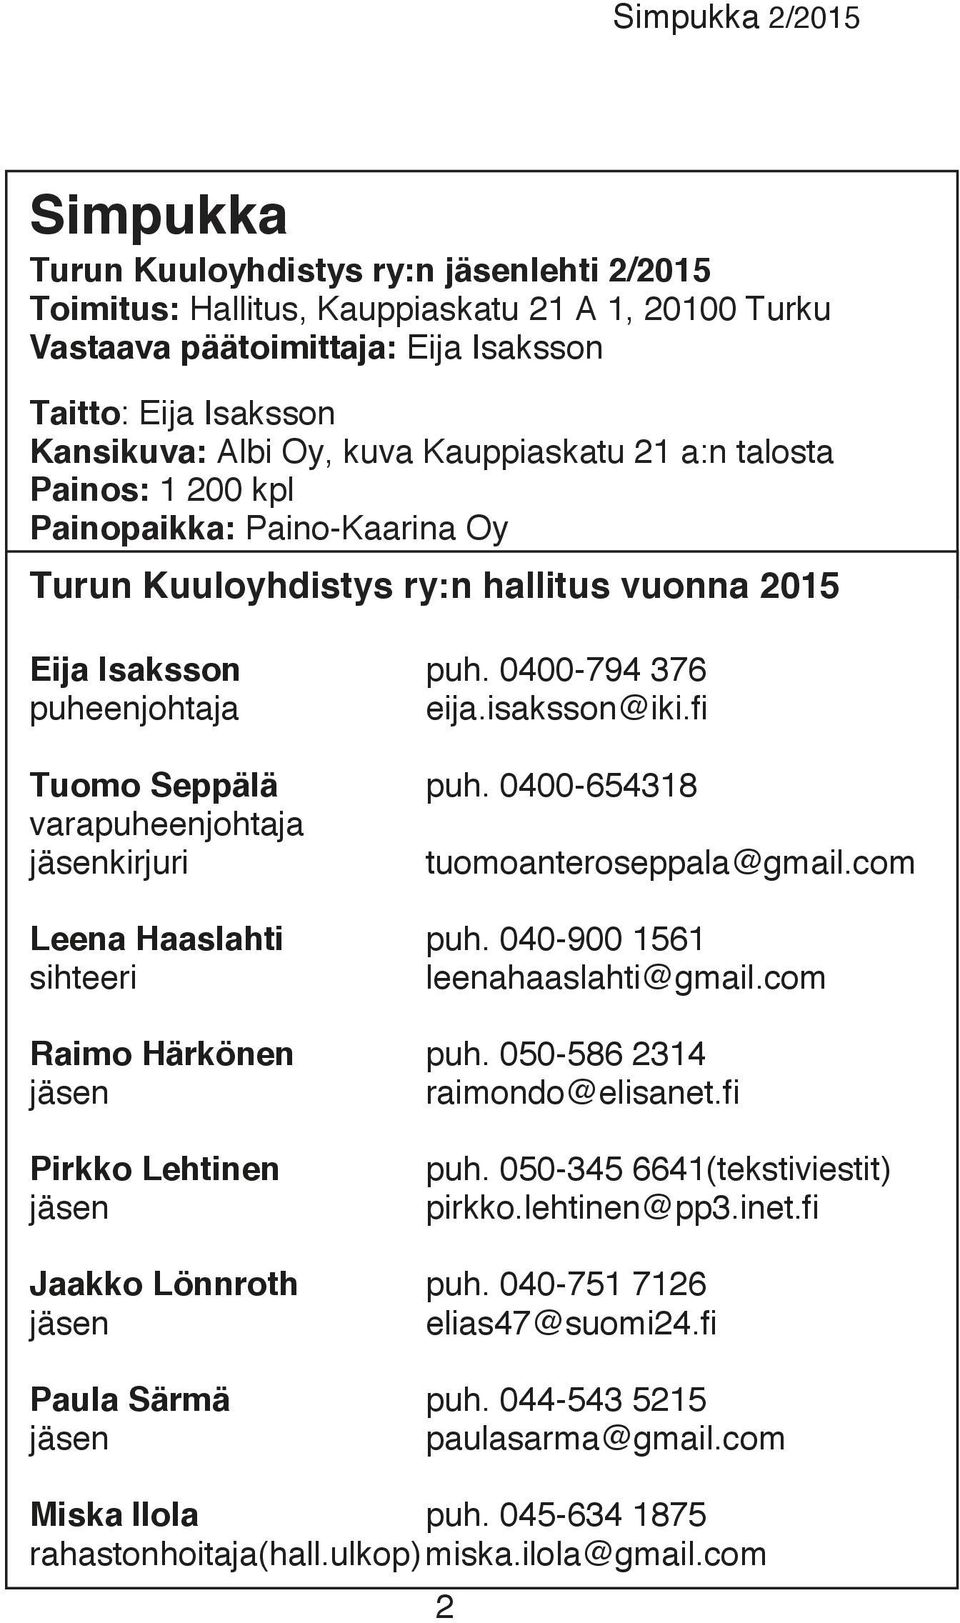 fi Tuomo Seppälä puh. 0400-654318 varapuheenjohtaja jäsenkirjuri tuomoanteroseppala@gmail.com Leena Haaslahti puh. 040-900 1561 sihteeri leenahaaslahti@gmail.com Raimo Härkönen puh.